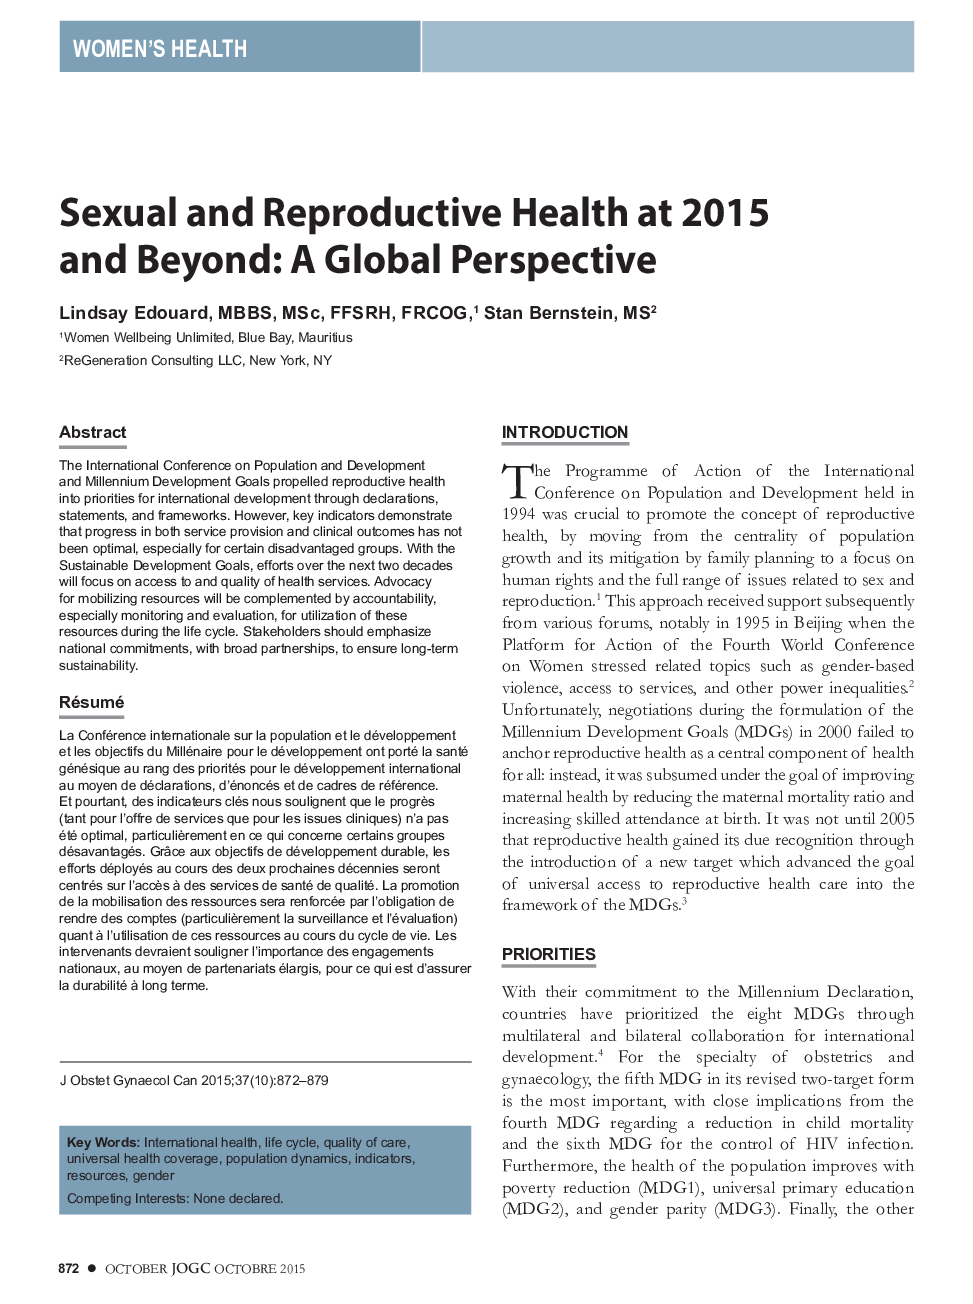 بهداشت جنسی و سالمندی در 2015 و بعد از آن: چشم انداز جهانی 